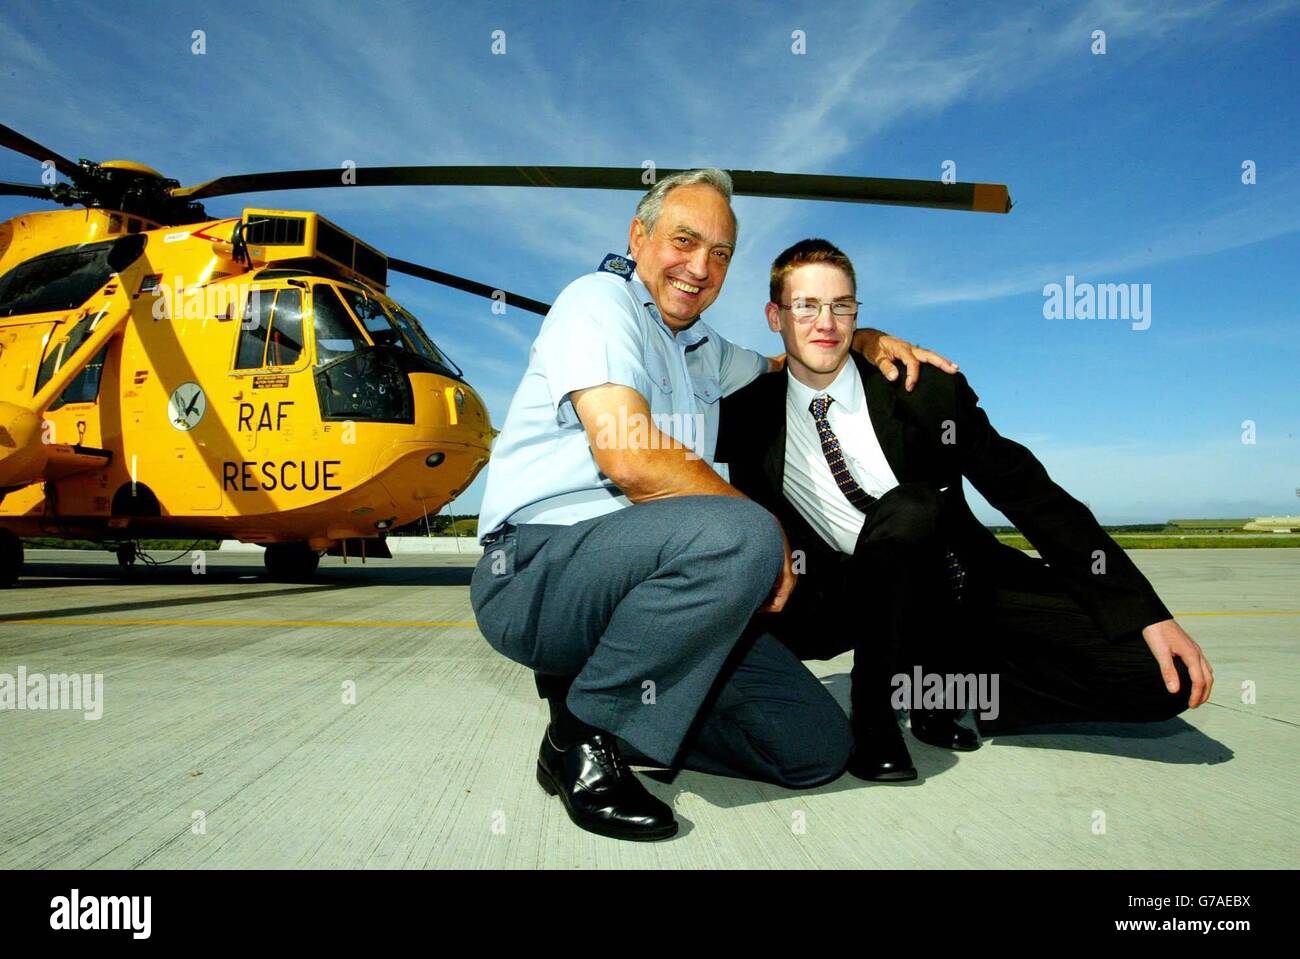 RAF Rescue Winchman, Bob Pountney avec Sam Harcus, 16 ans, à la base aérienne de RAF Kinloss, dans le Morayshire, en Écosse, qu'il a sauvé en tant que bébé.M. Pountney prend sa retraite après 44 ans de service. Banque D'Images